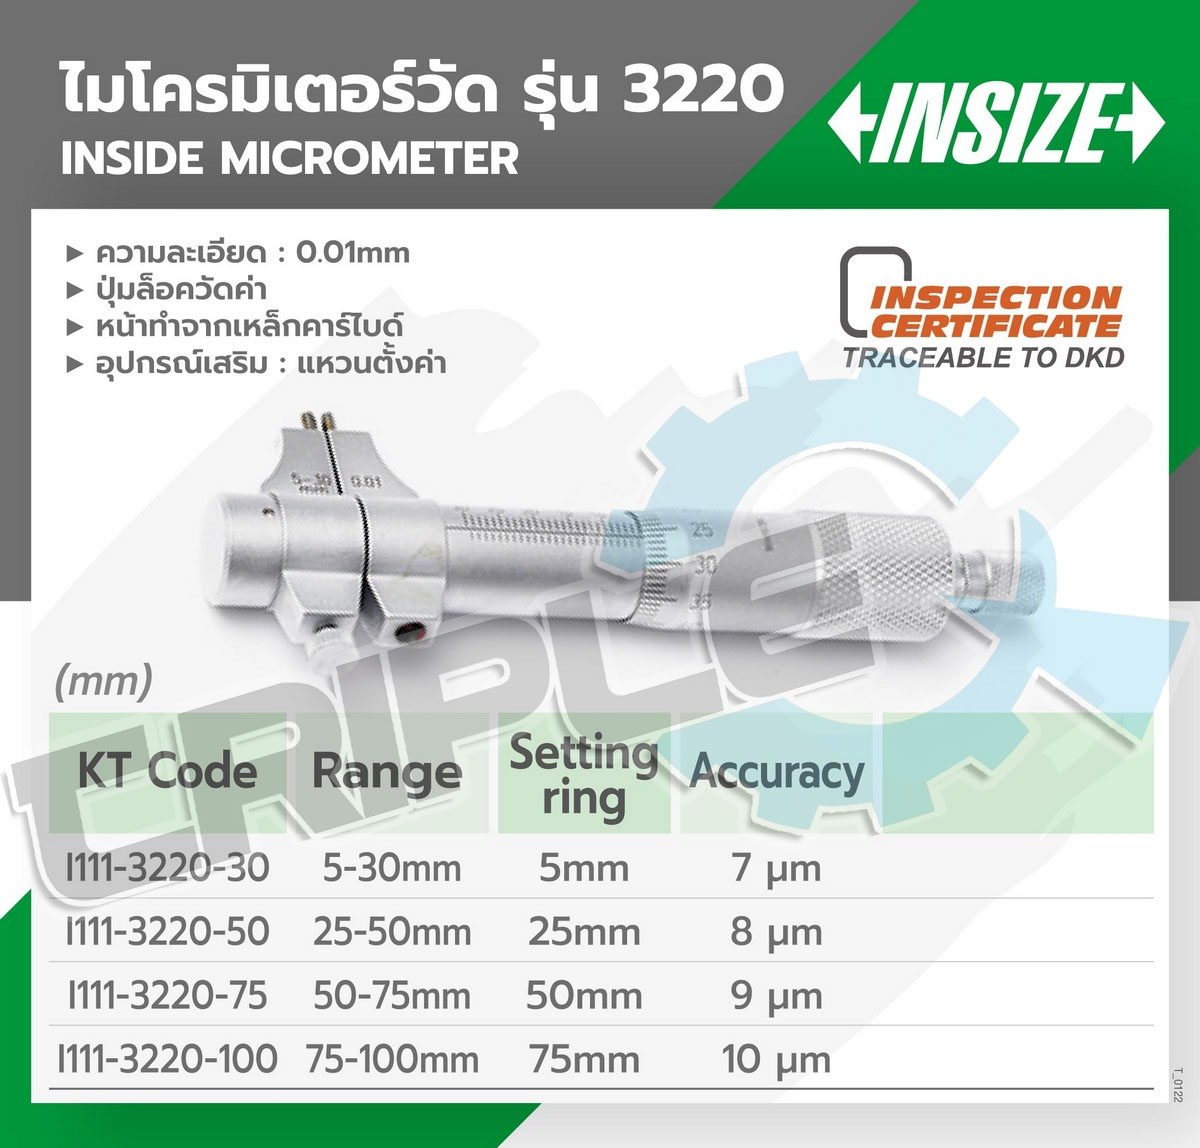 INSIZE - ไมโครมิเตอร์วัดรูใน รุ่น 3220-75 ขนาด 50-75 มม. ความละเอียดในการอ่าน 0.01 มม. ปากวัดงานเป็นคาร์ไบด์ ขนาดกะทัดรัด ใช้วัสดุด้วยเหล็กกล้า ไม่เป็นสนิม